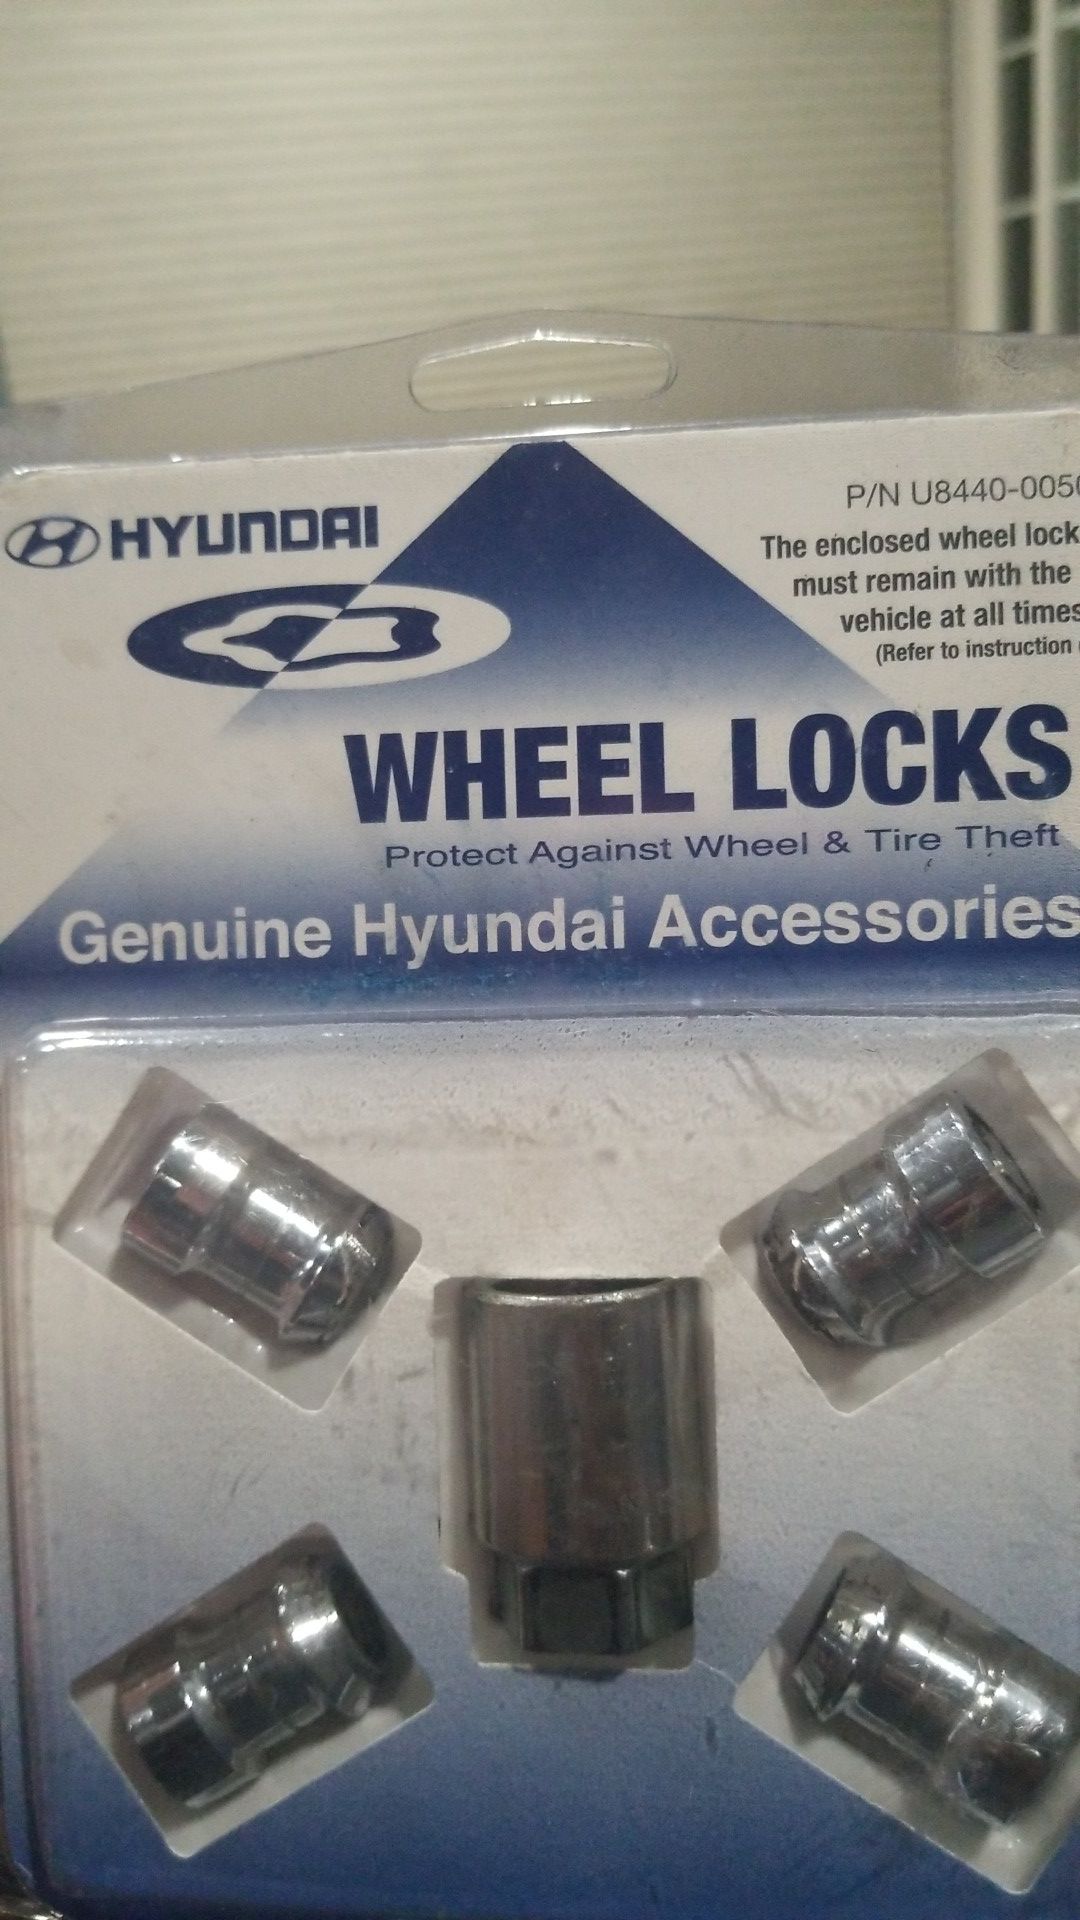 HYUNDAI WHEEL LOCKS